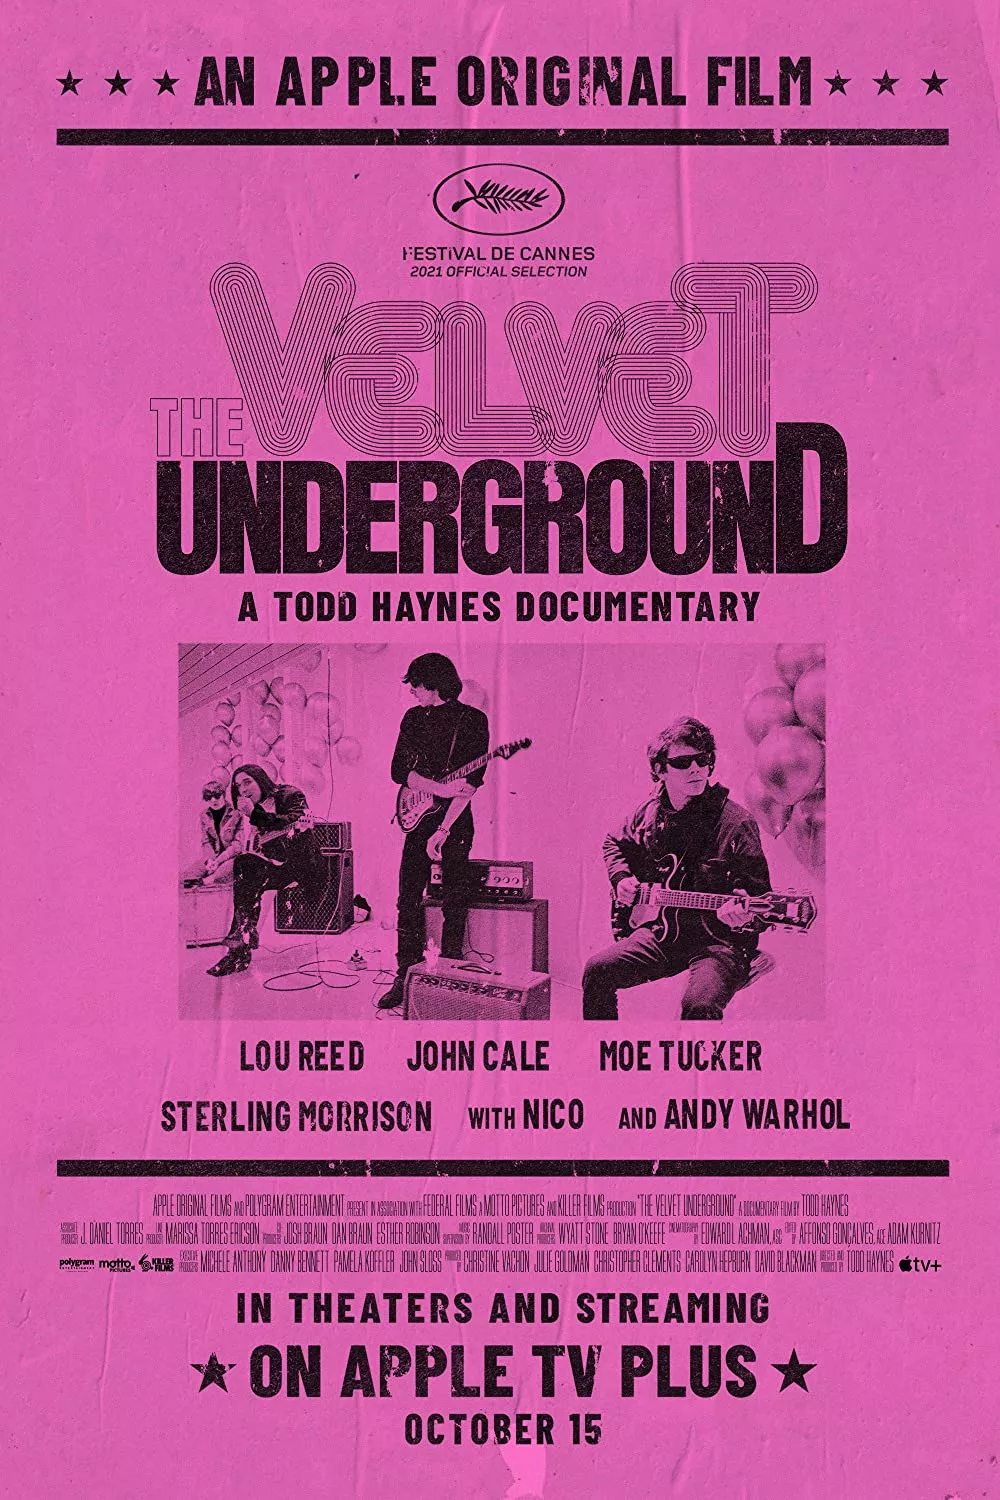 The Velvet Underground - Todd Haynes